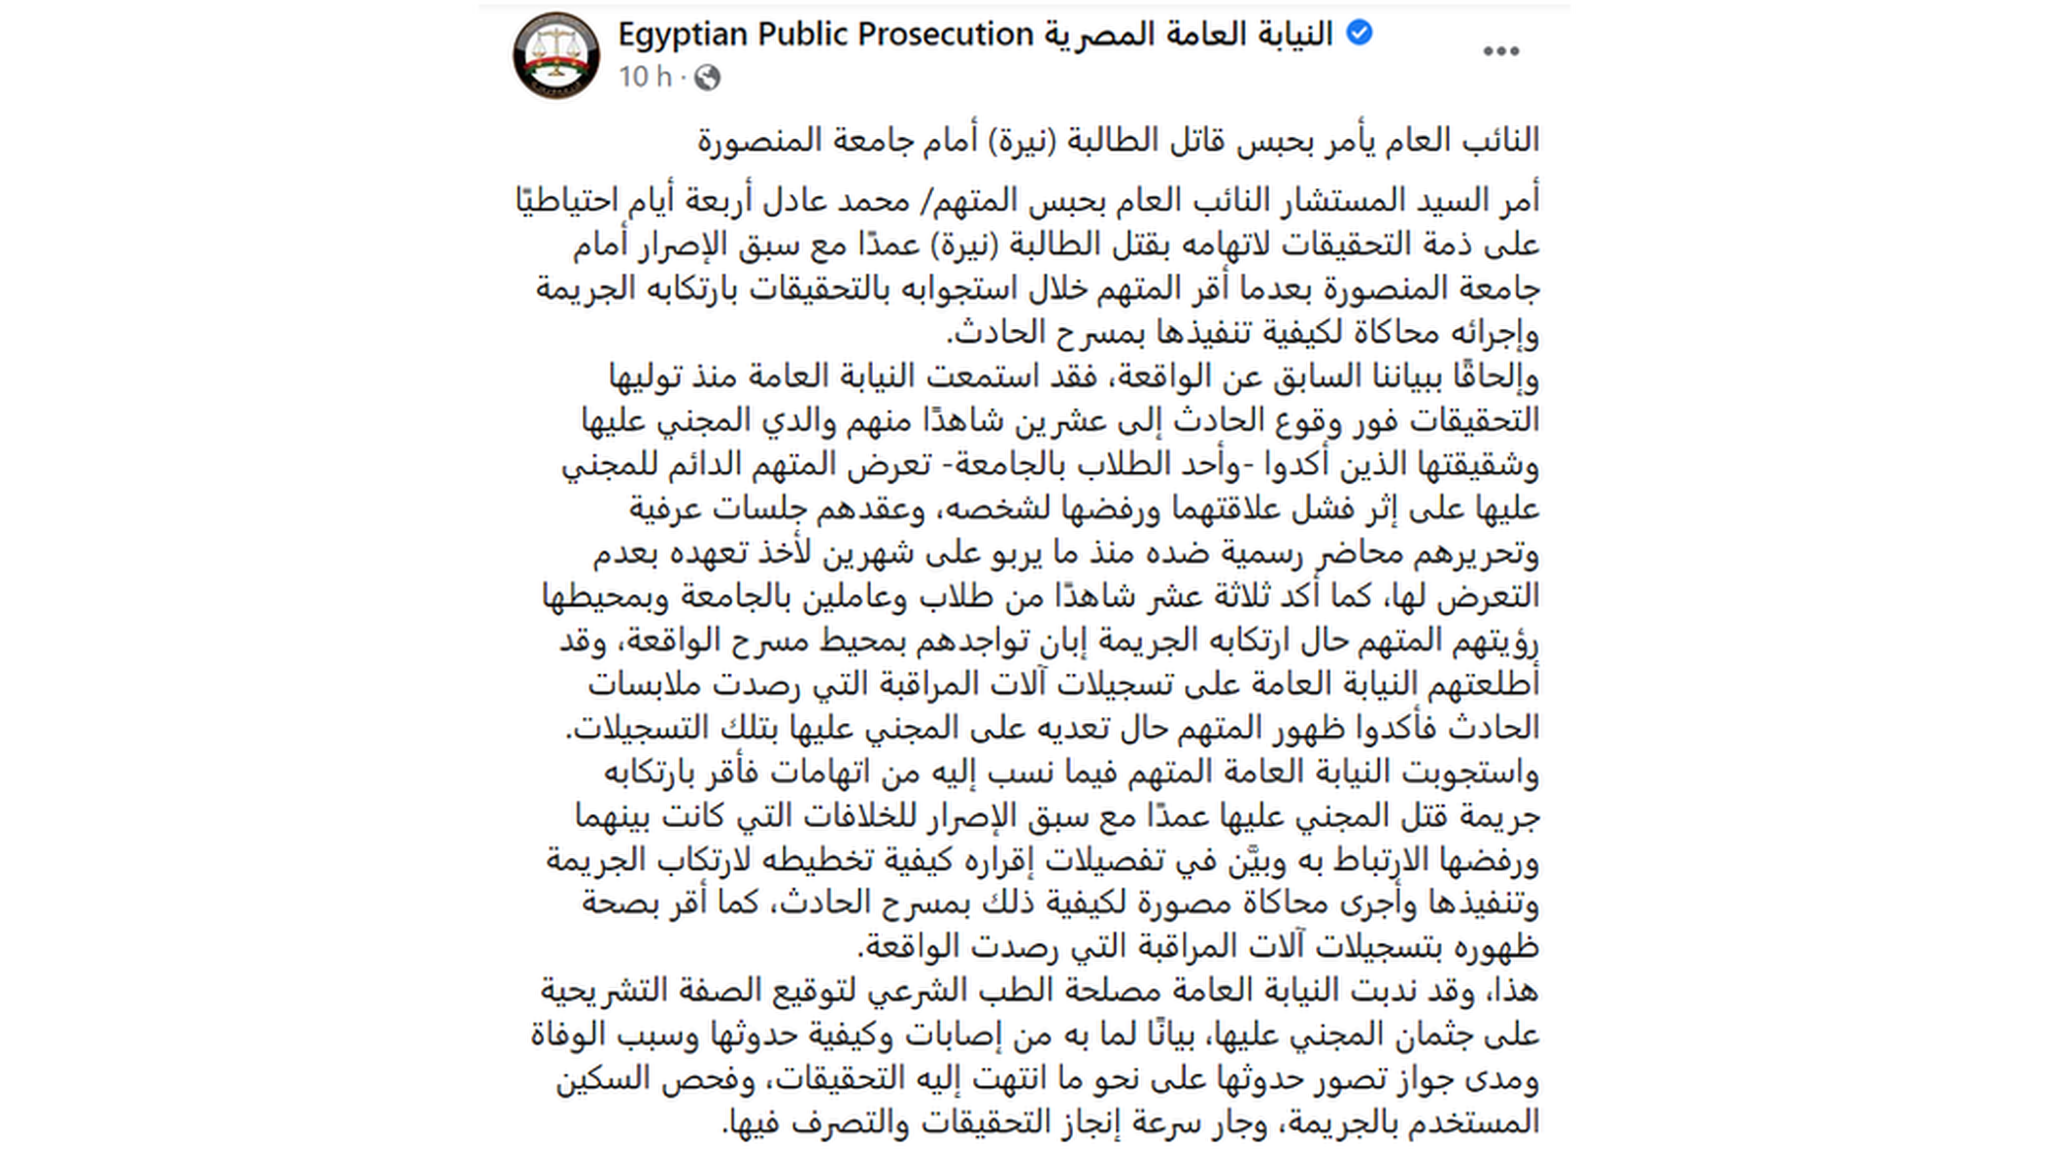 بيان النيابة العامة المصرية حول جريمة المنصورة